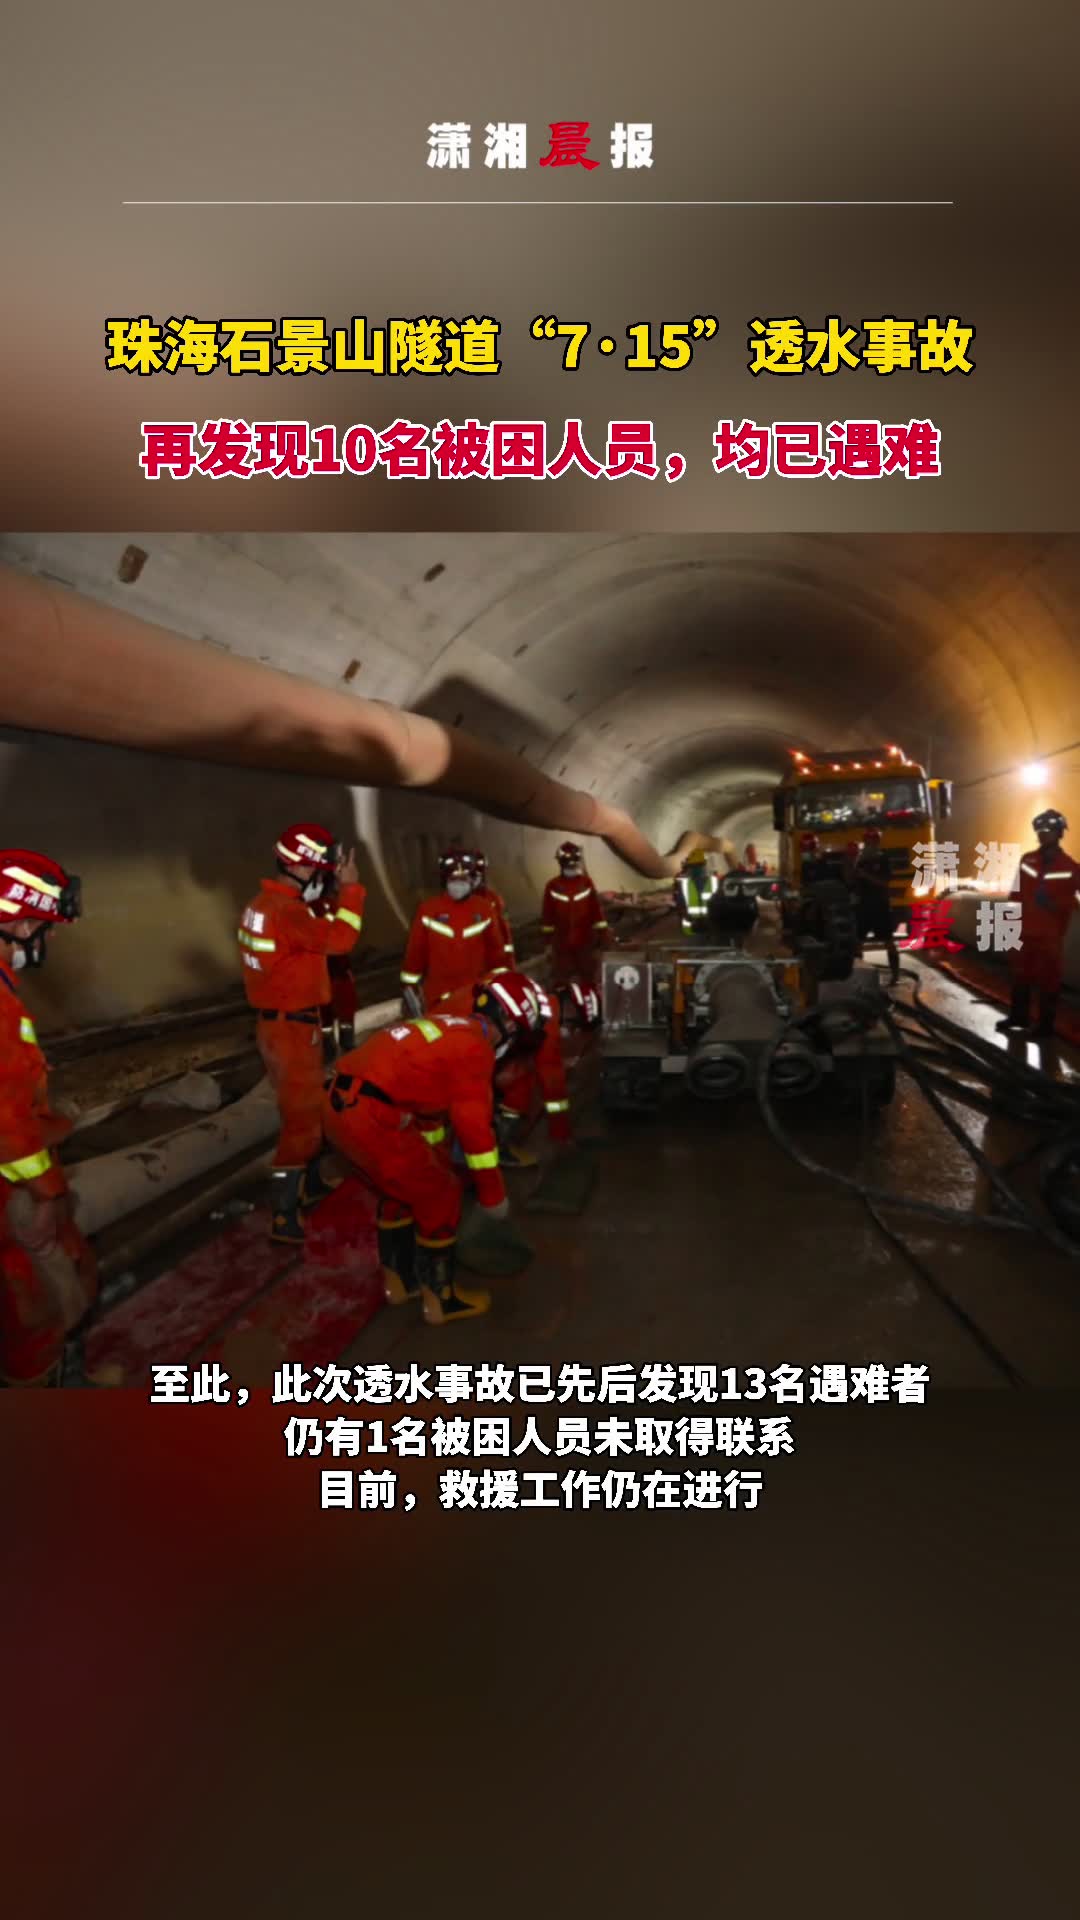 隧道7·15透水事故再发现10名被困人员,均已遇难